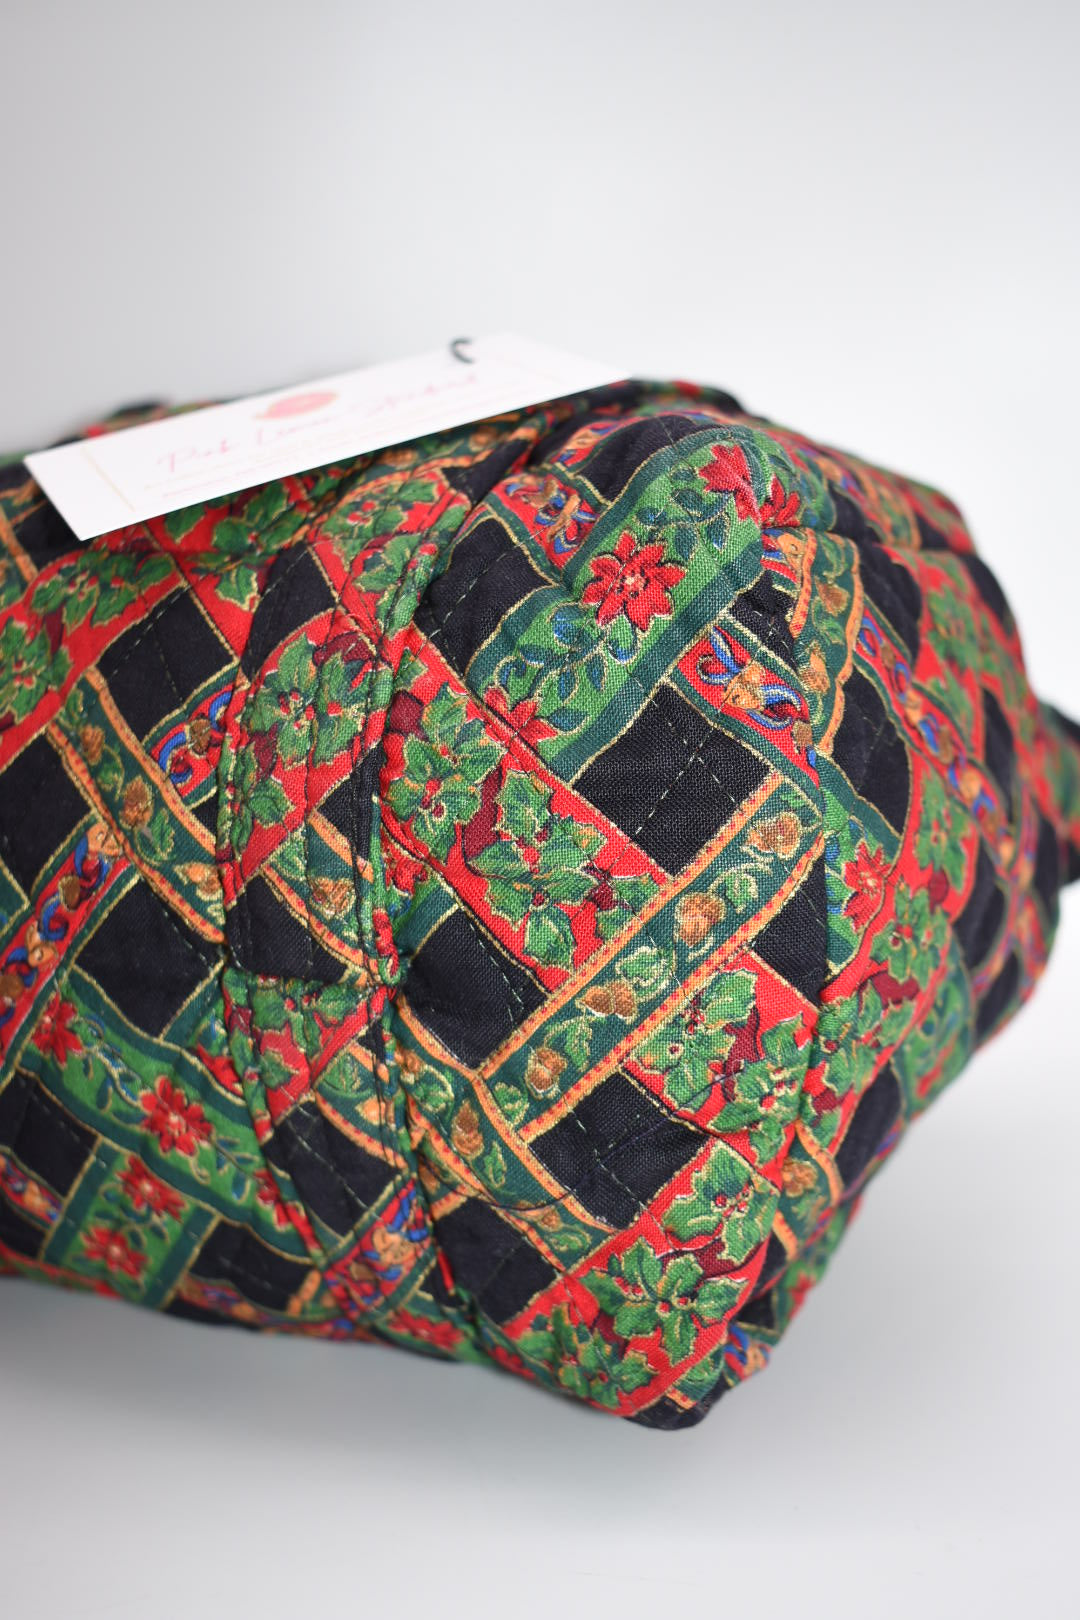 Vintage Vera Bradley Shoulder Bag in "Noel Coordinate" Pattern